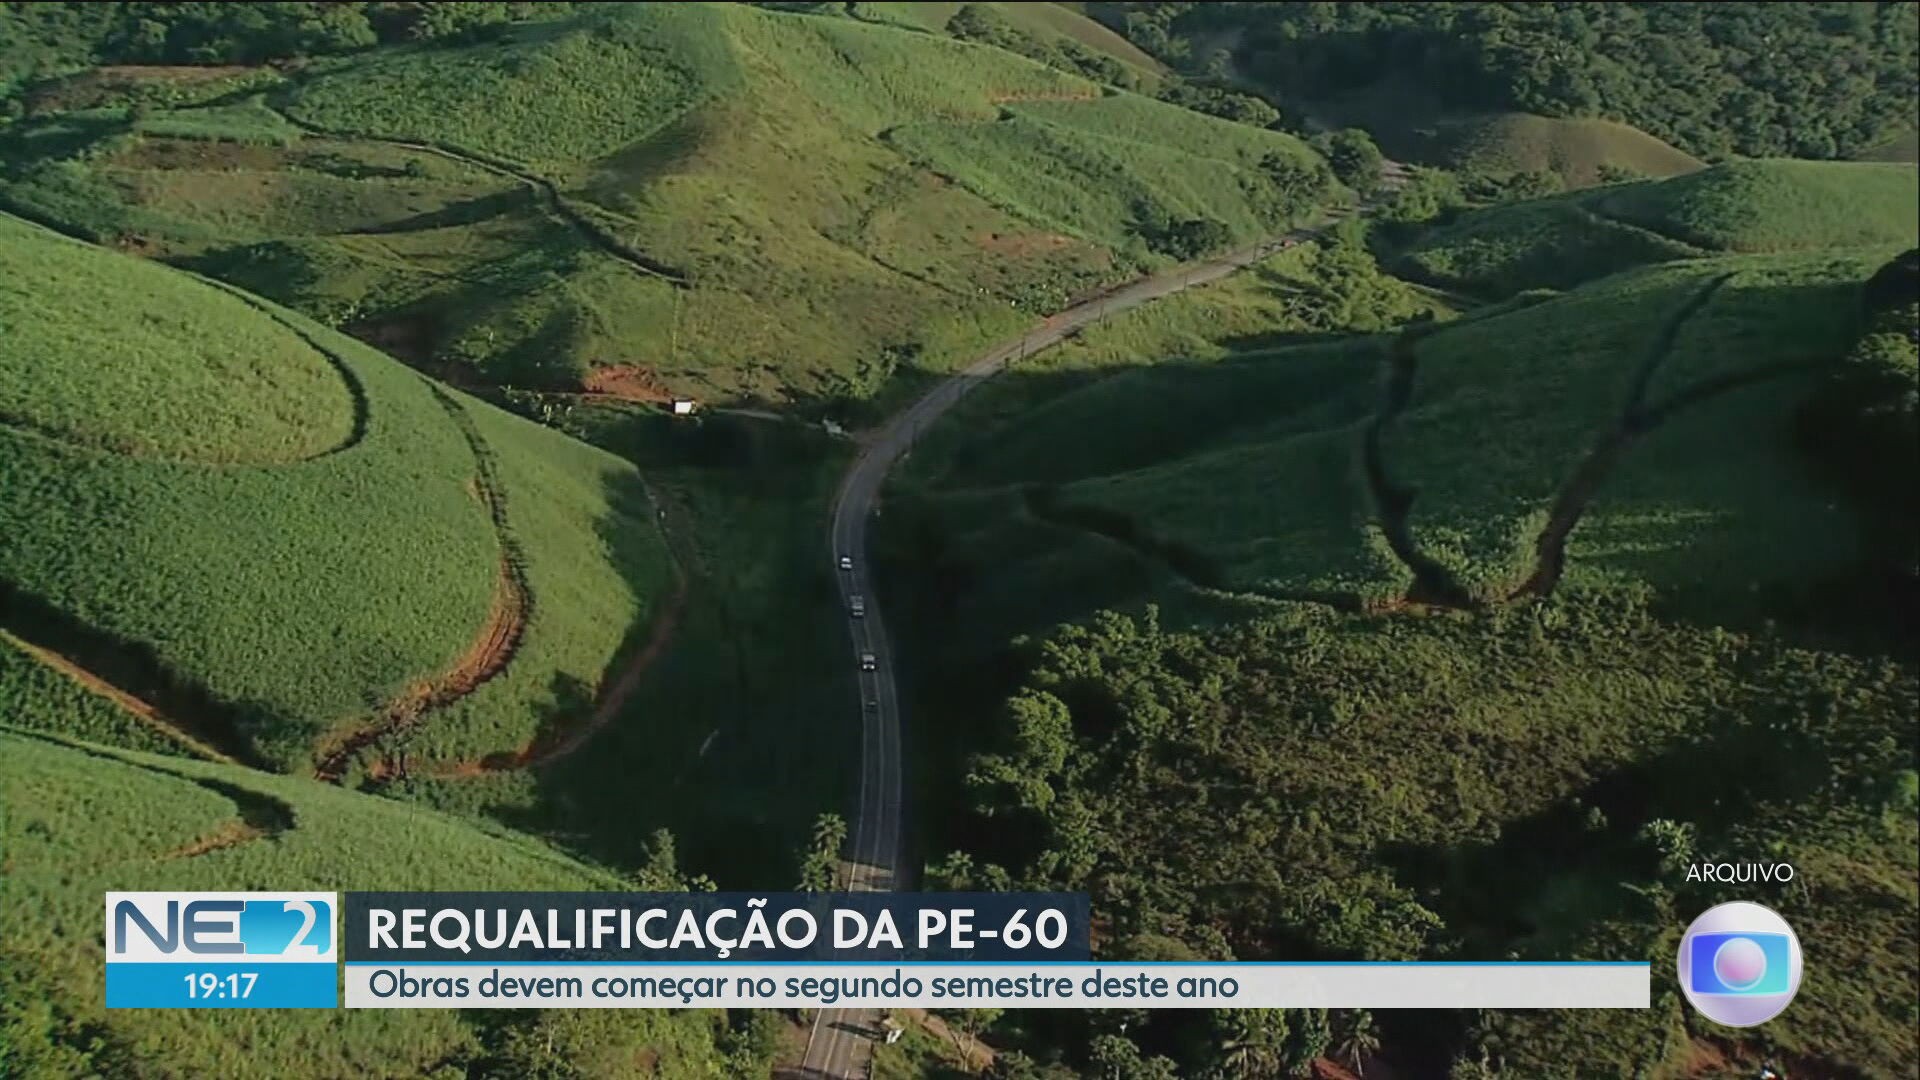 Governo de Pernambuco anuncia requalificação da rodovia PE-60, com investimento de R$ 74,8 milhões